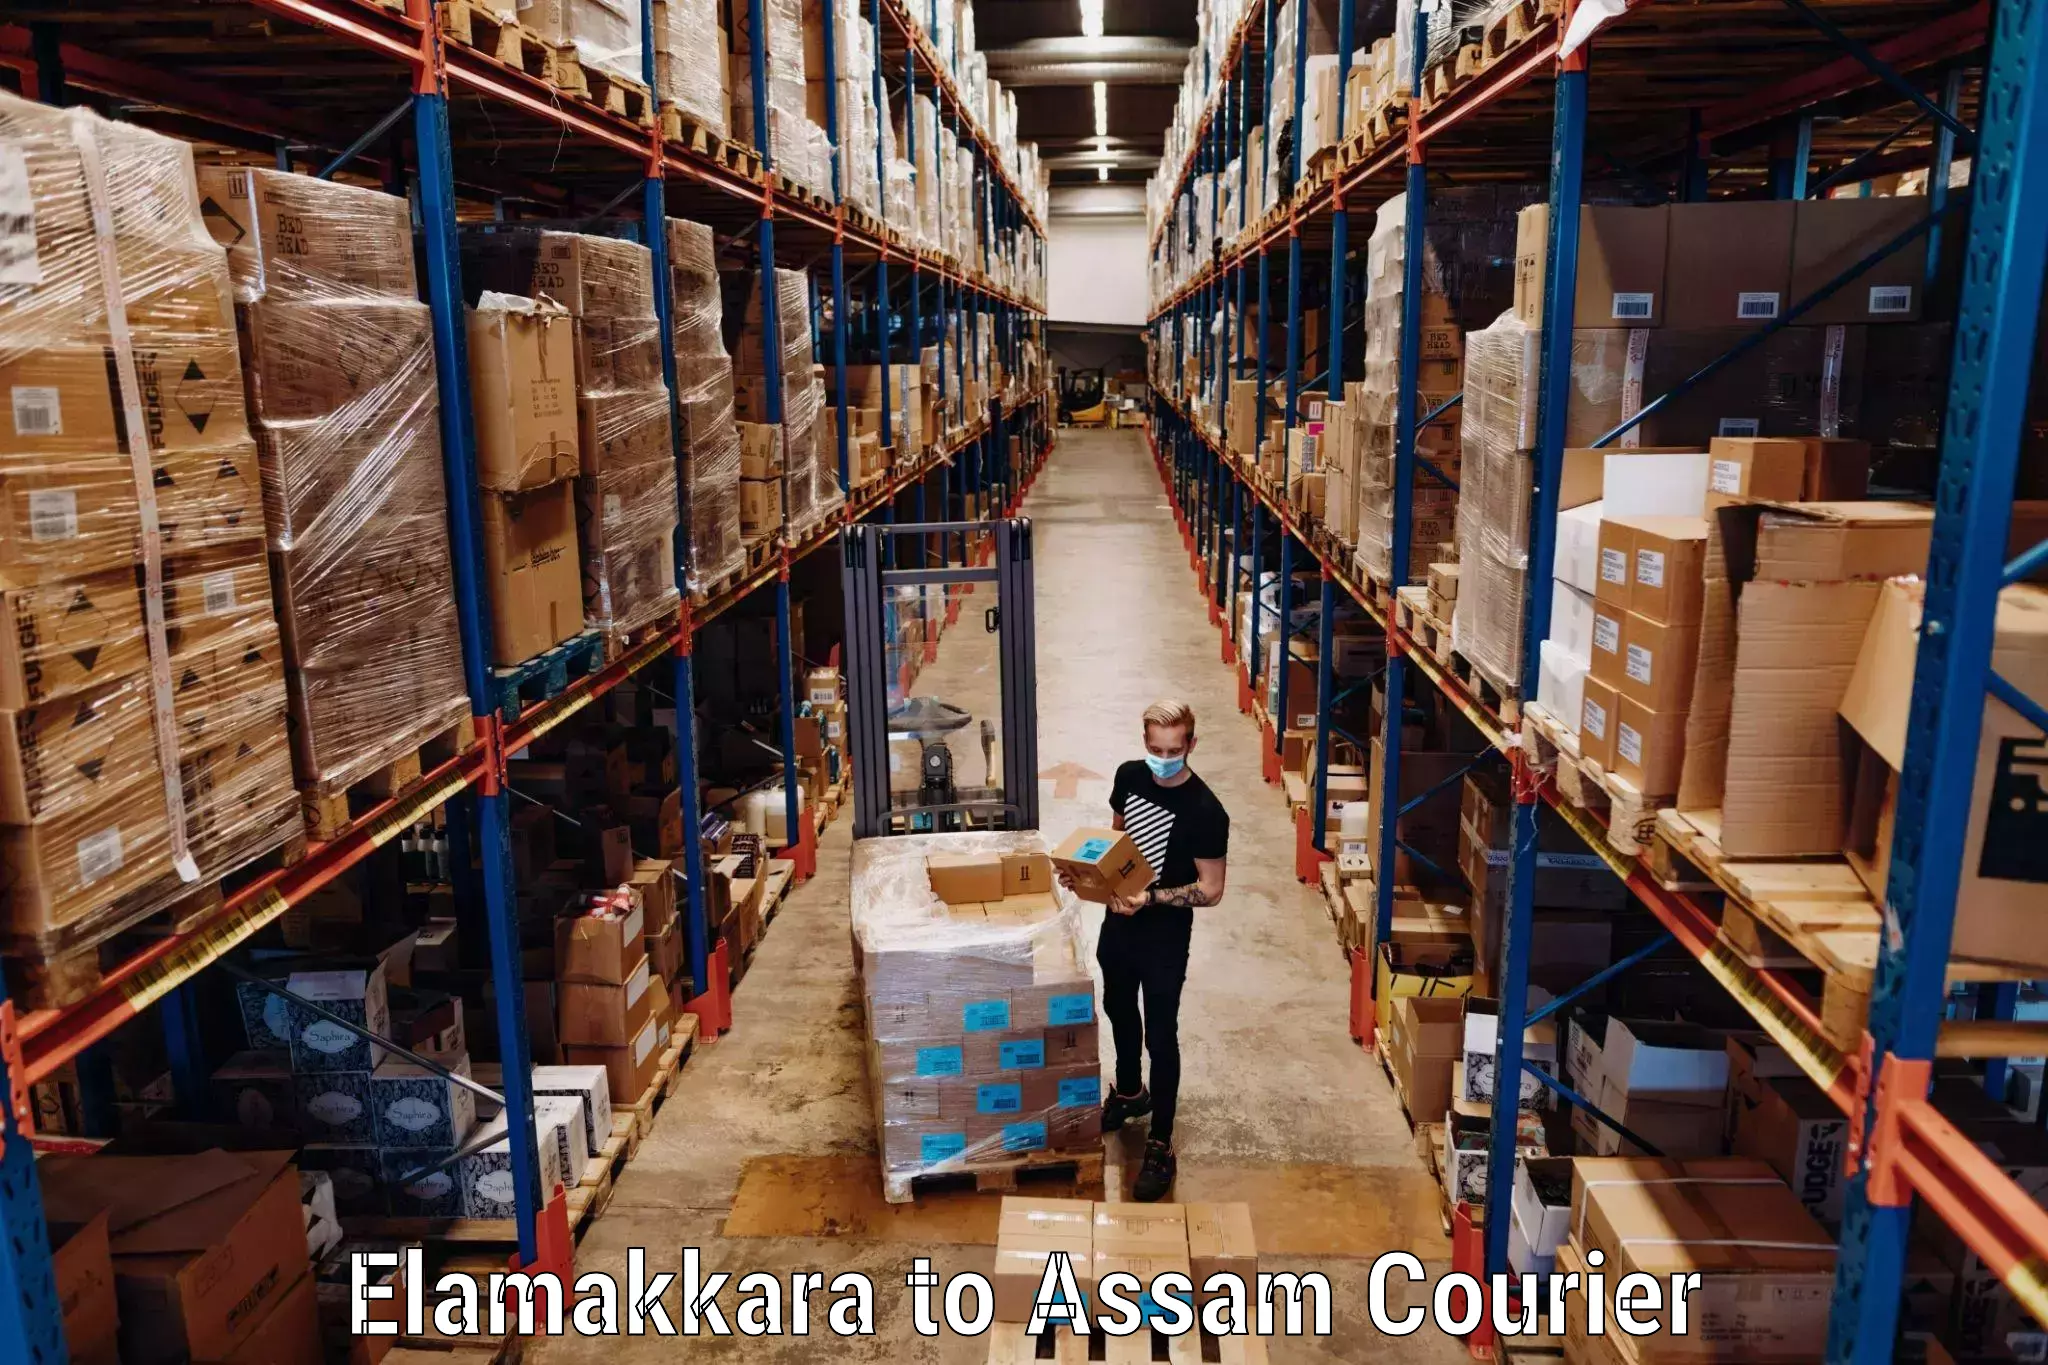 Luggage shipment specialists Elamakkara to Sadiya